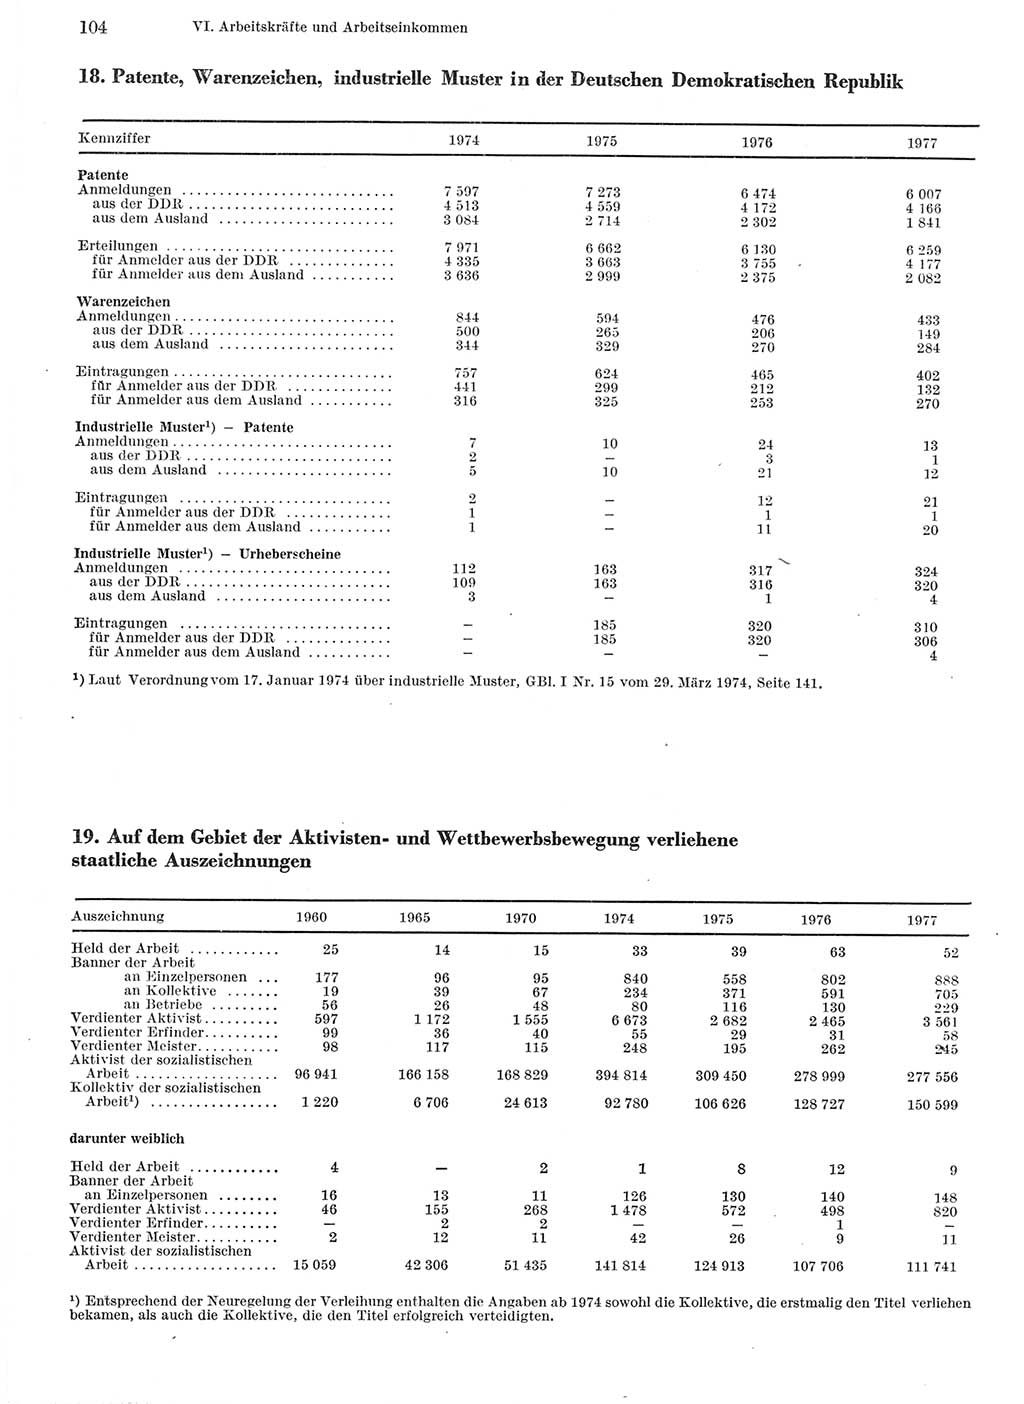 Statistisches Jahrbuch der Deutschen Demokratischen Republik (DDR) 1978, Seite 104 (Stat. Jb. DDR 1978, S. 104)